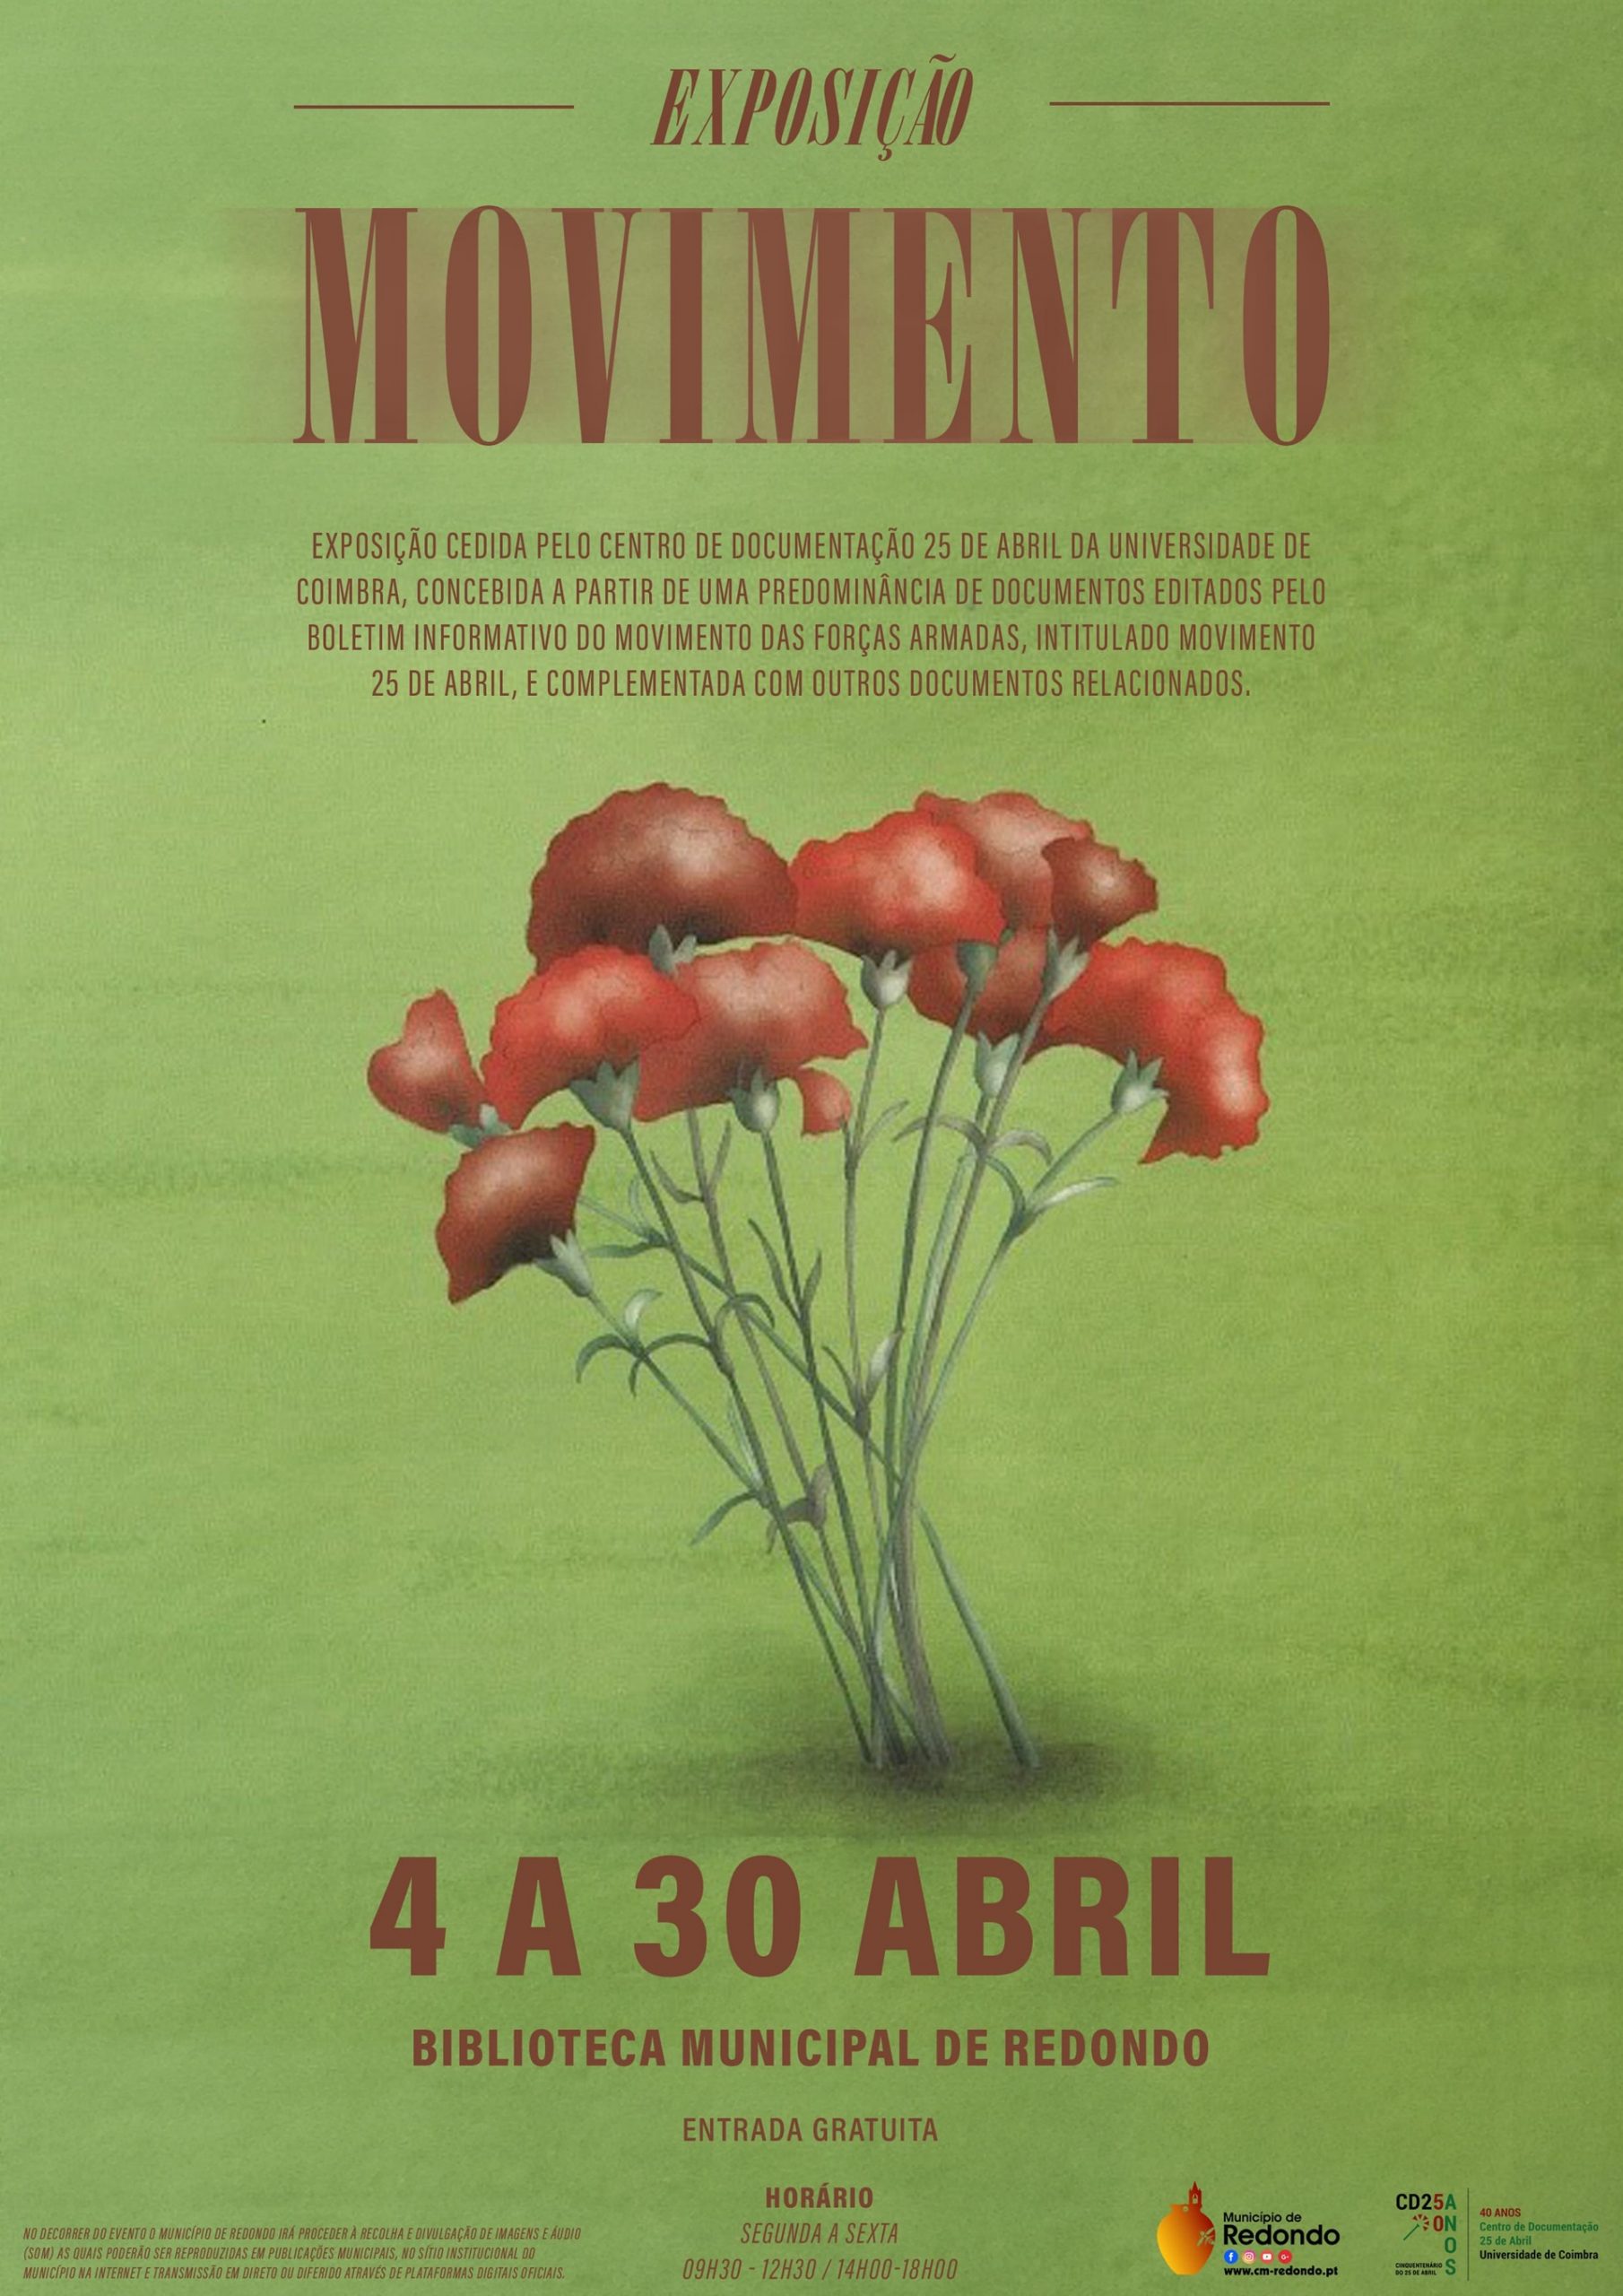 Exposição documental “Movimento” | de 4 a 30 de abril | Biblioteca Municipal de Redondo